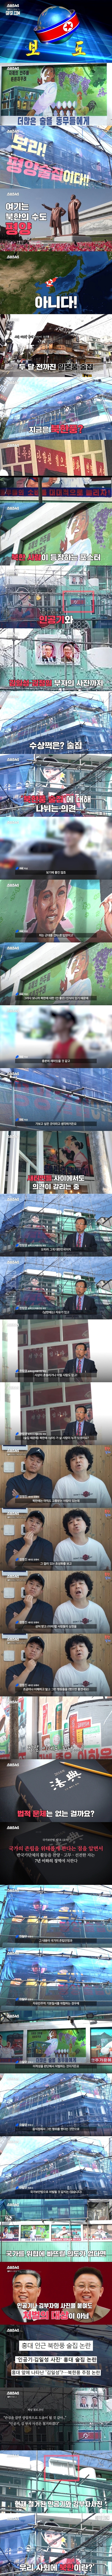 여기 남한 맞아 북한 쏙 빼닮은 홍대 선술집 논란... 불법이다 vs 아니다 .jpg